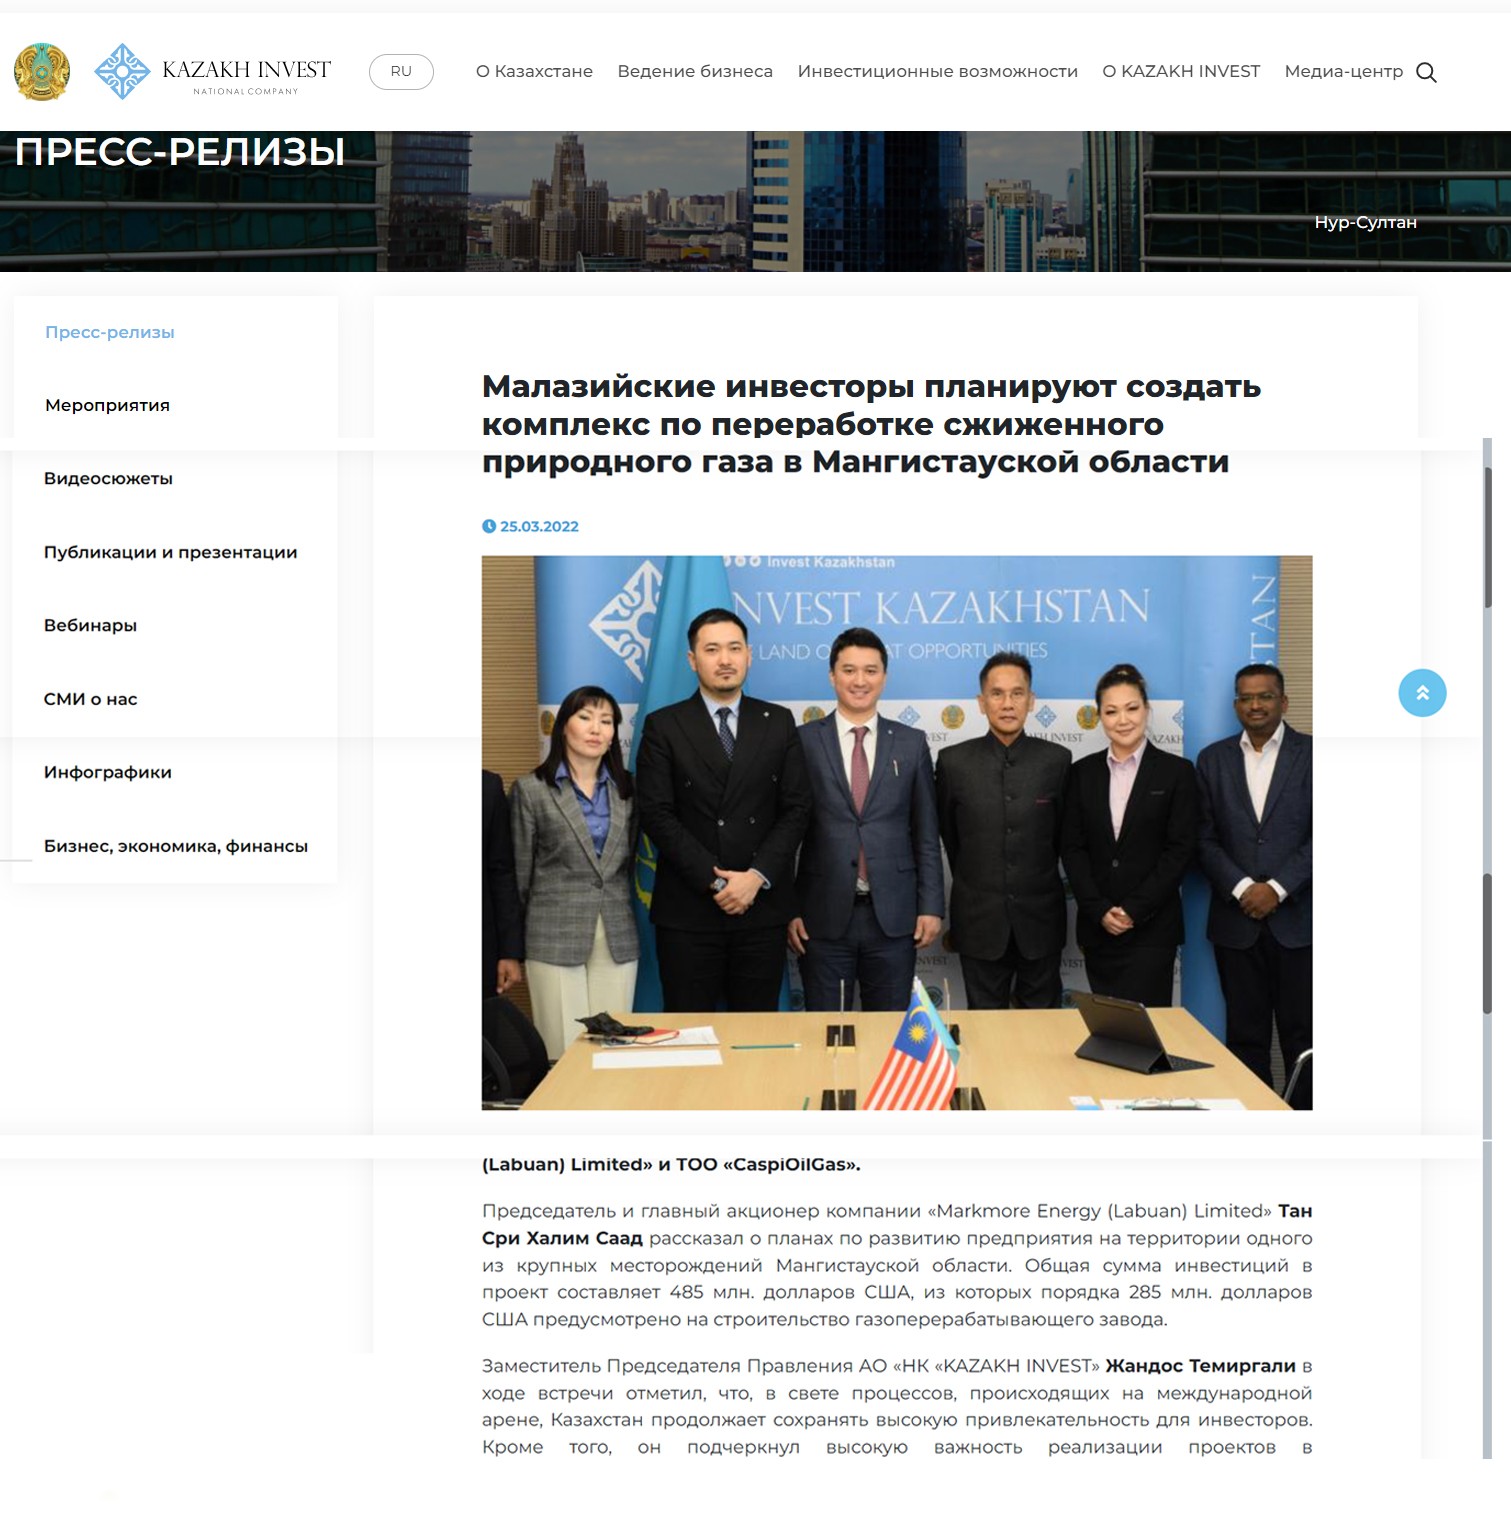 Миллиардные долги и запреты на выезд: что известно о малазийском инвесторе Казахстана